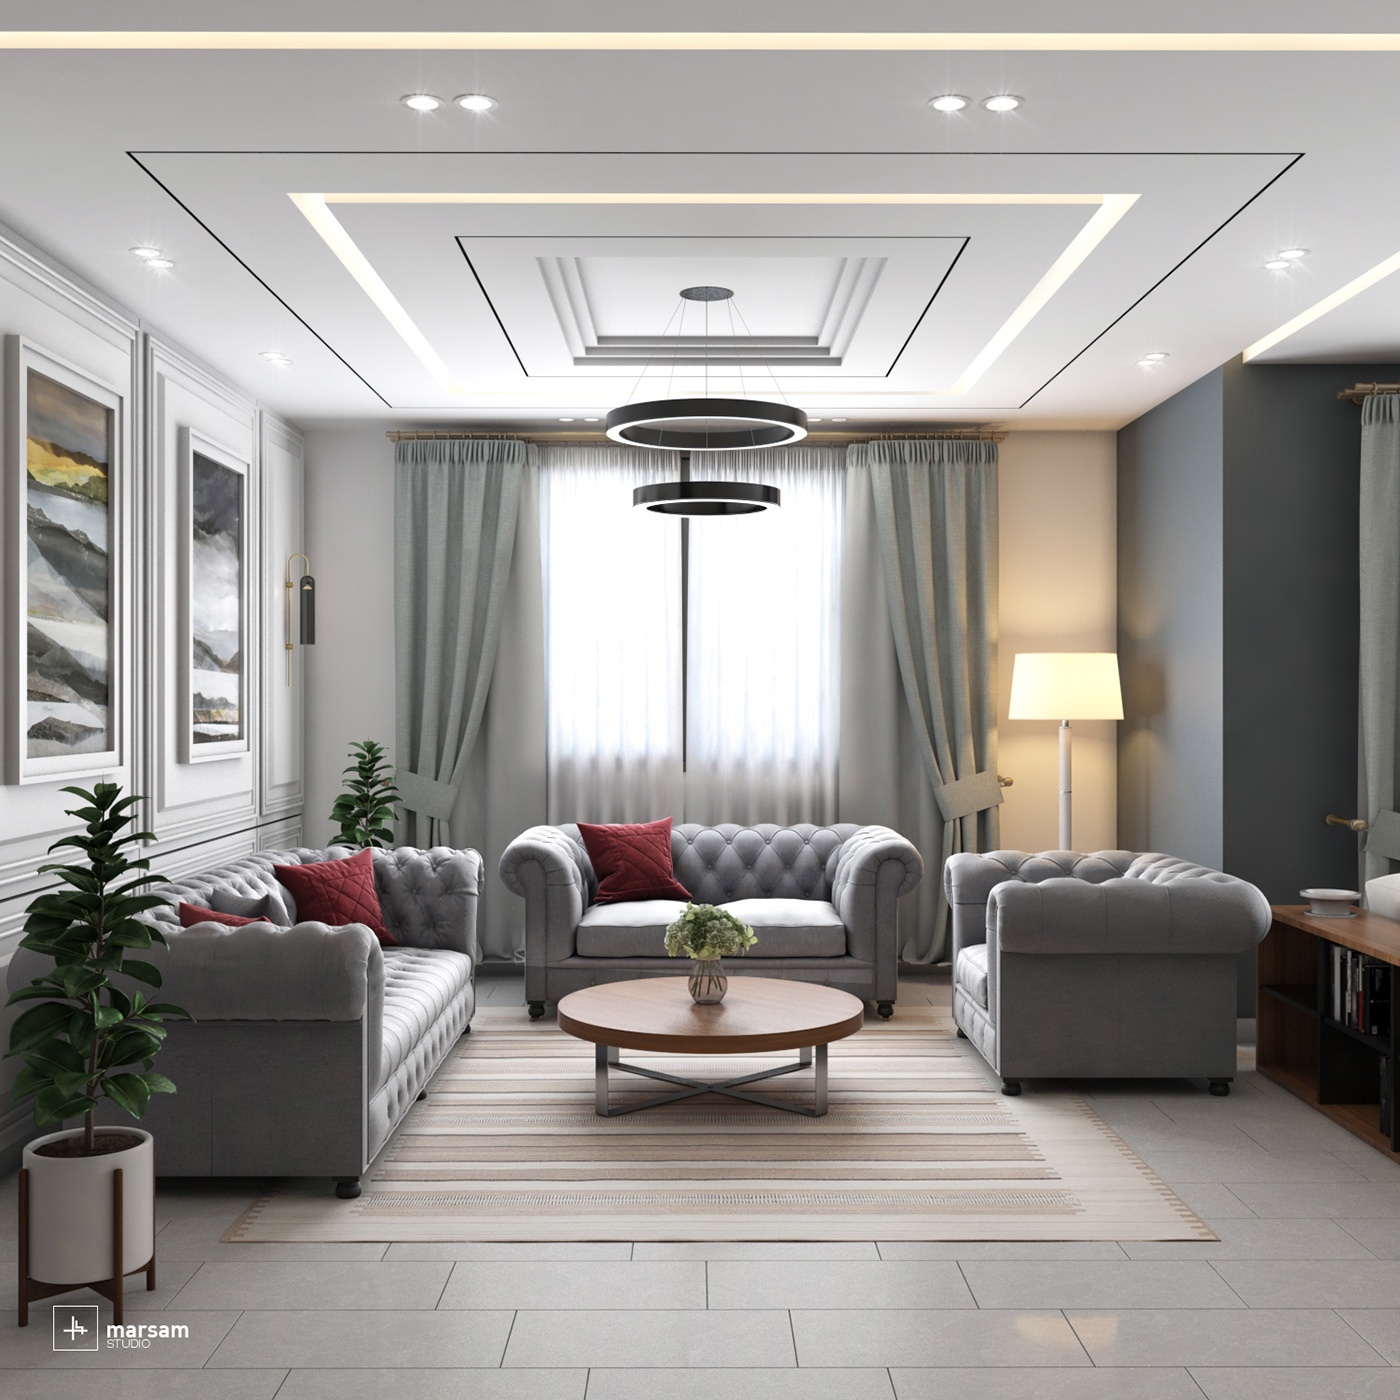 #interiordesign furniture architecture decore decoration